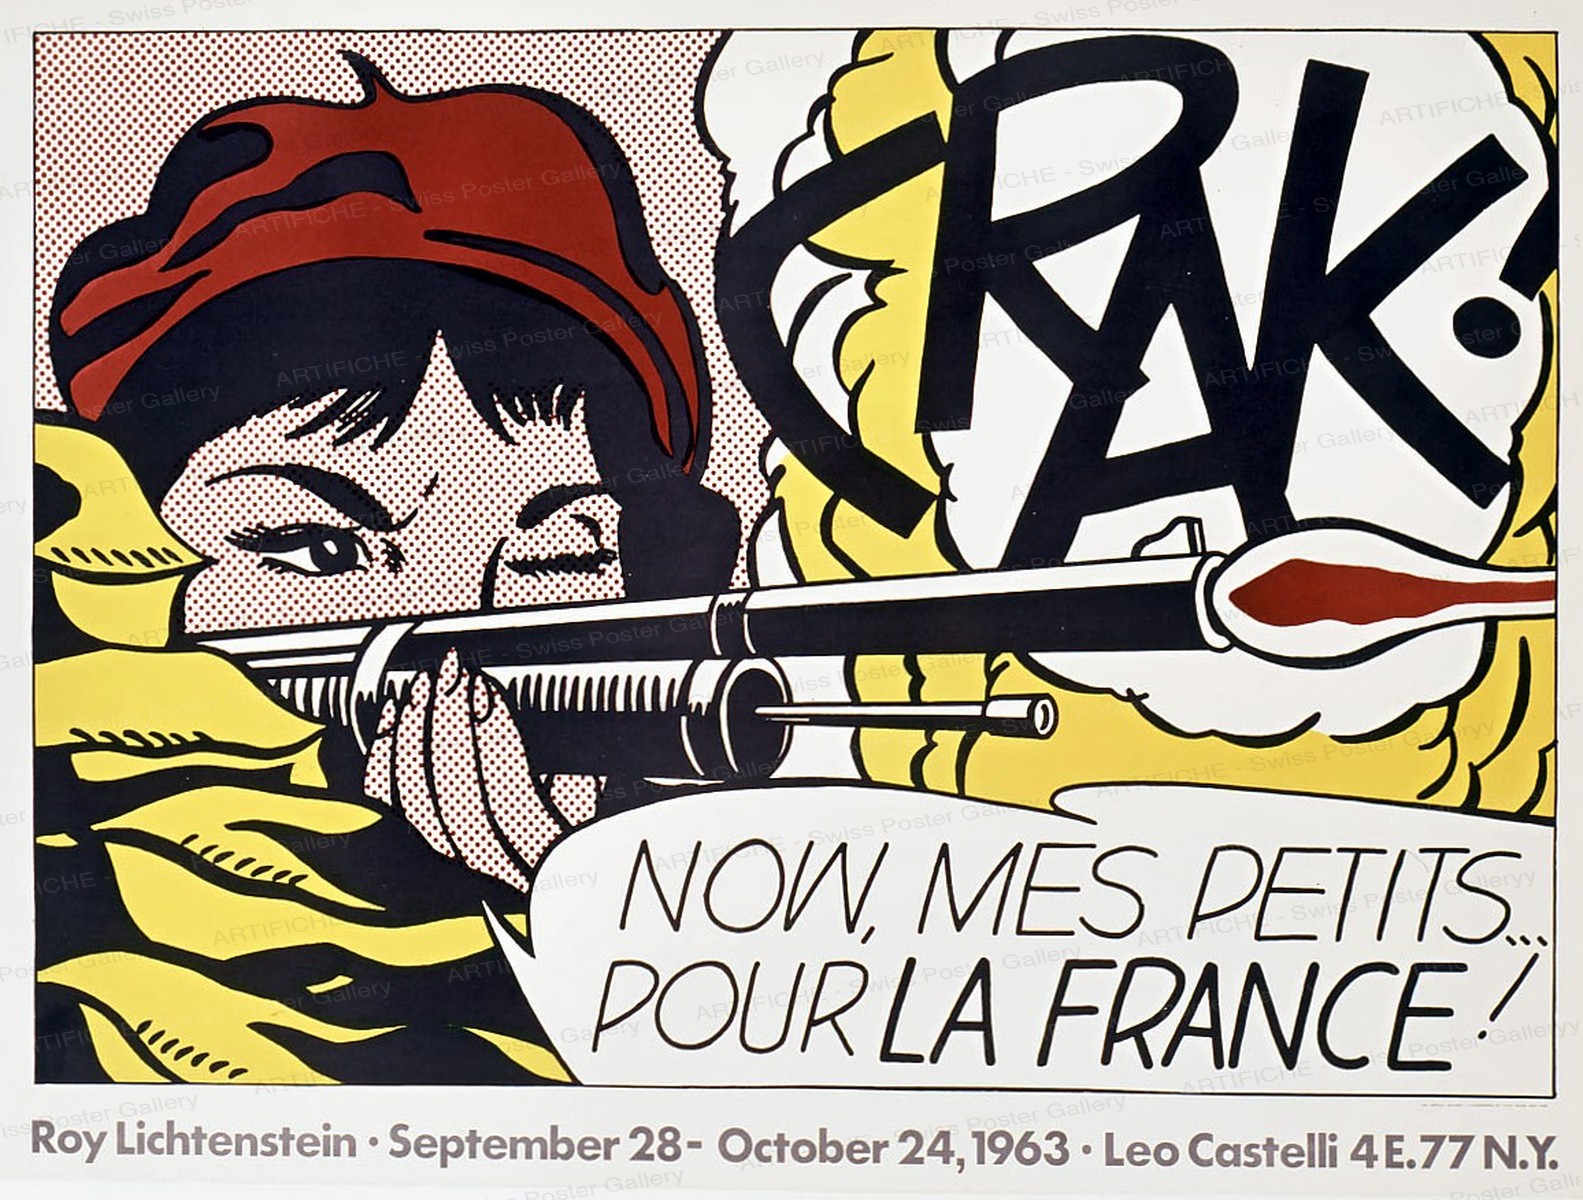 Crack – Now, mes petits pour la France !, Roy Lichtenstein